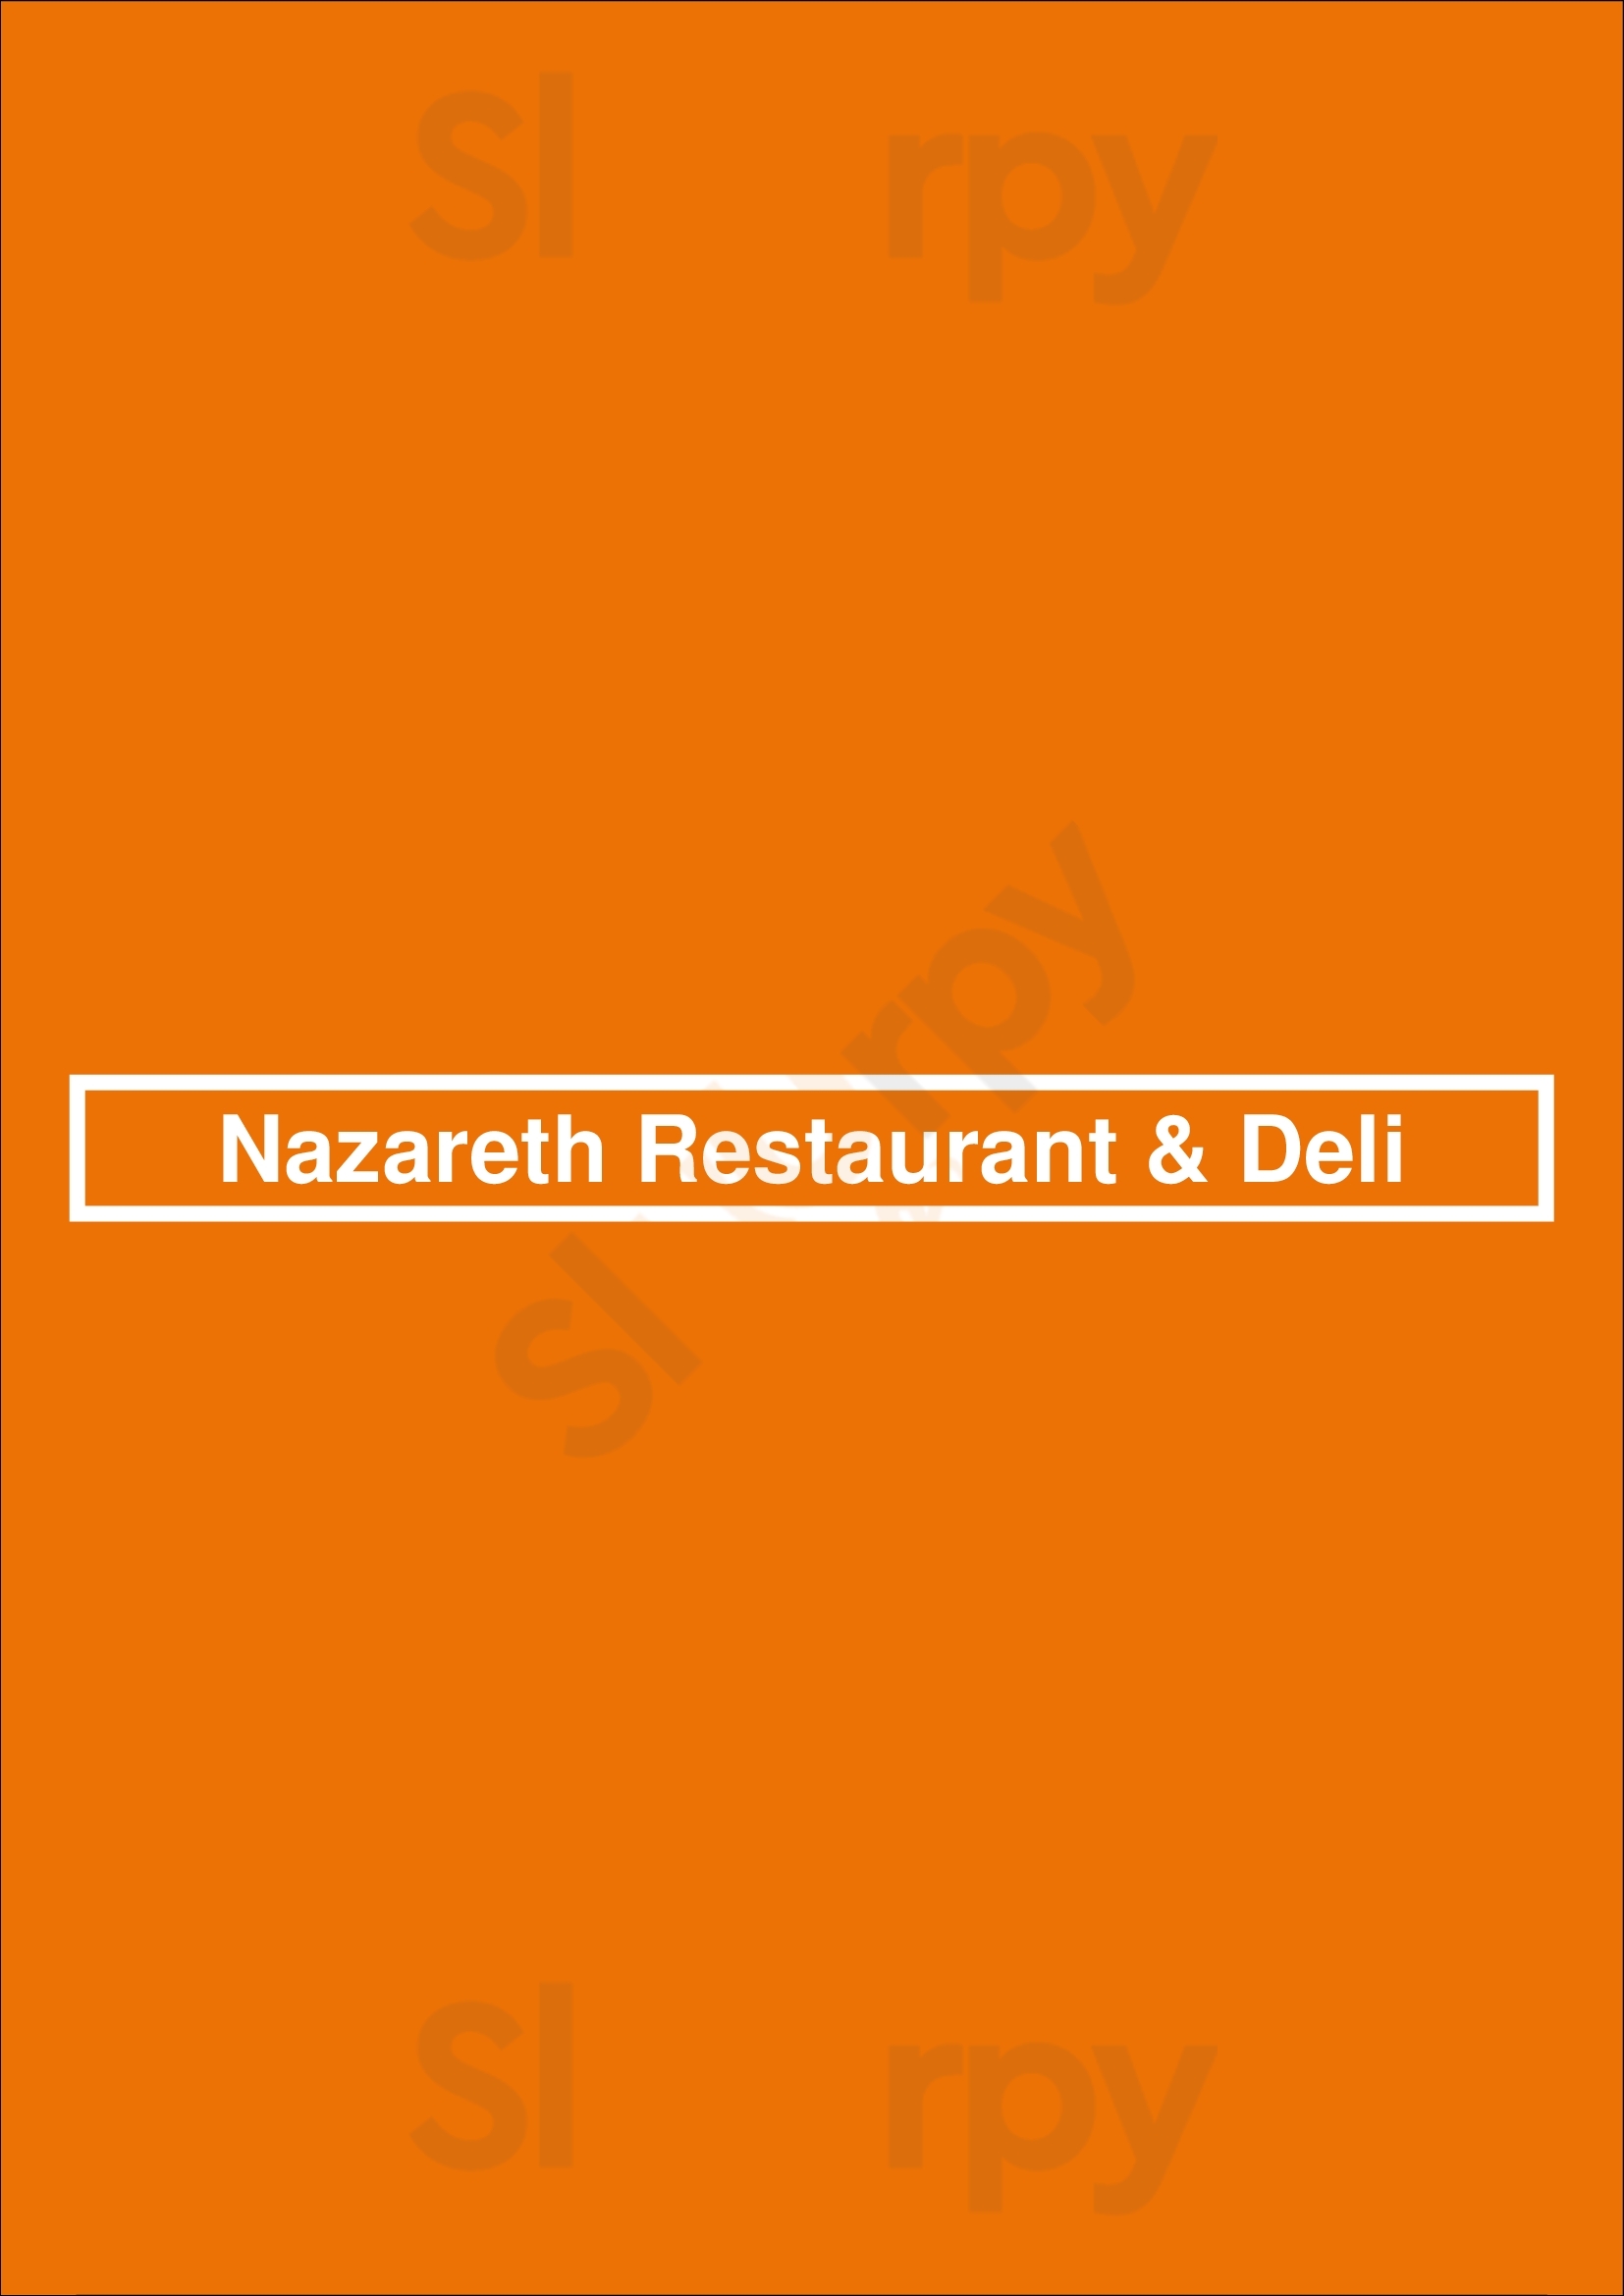 Nazareth Restaurant & Deli Columbus Menu - 1